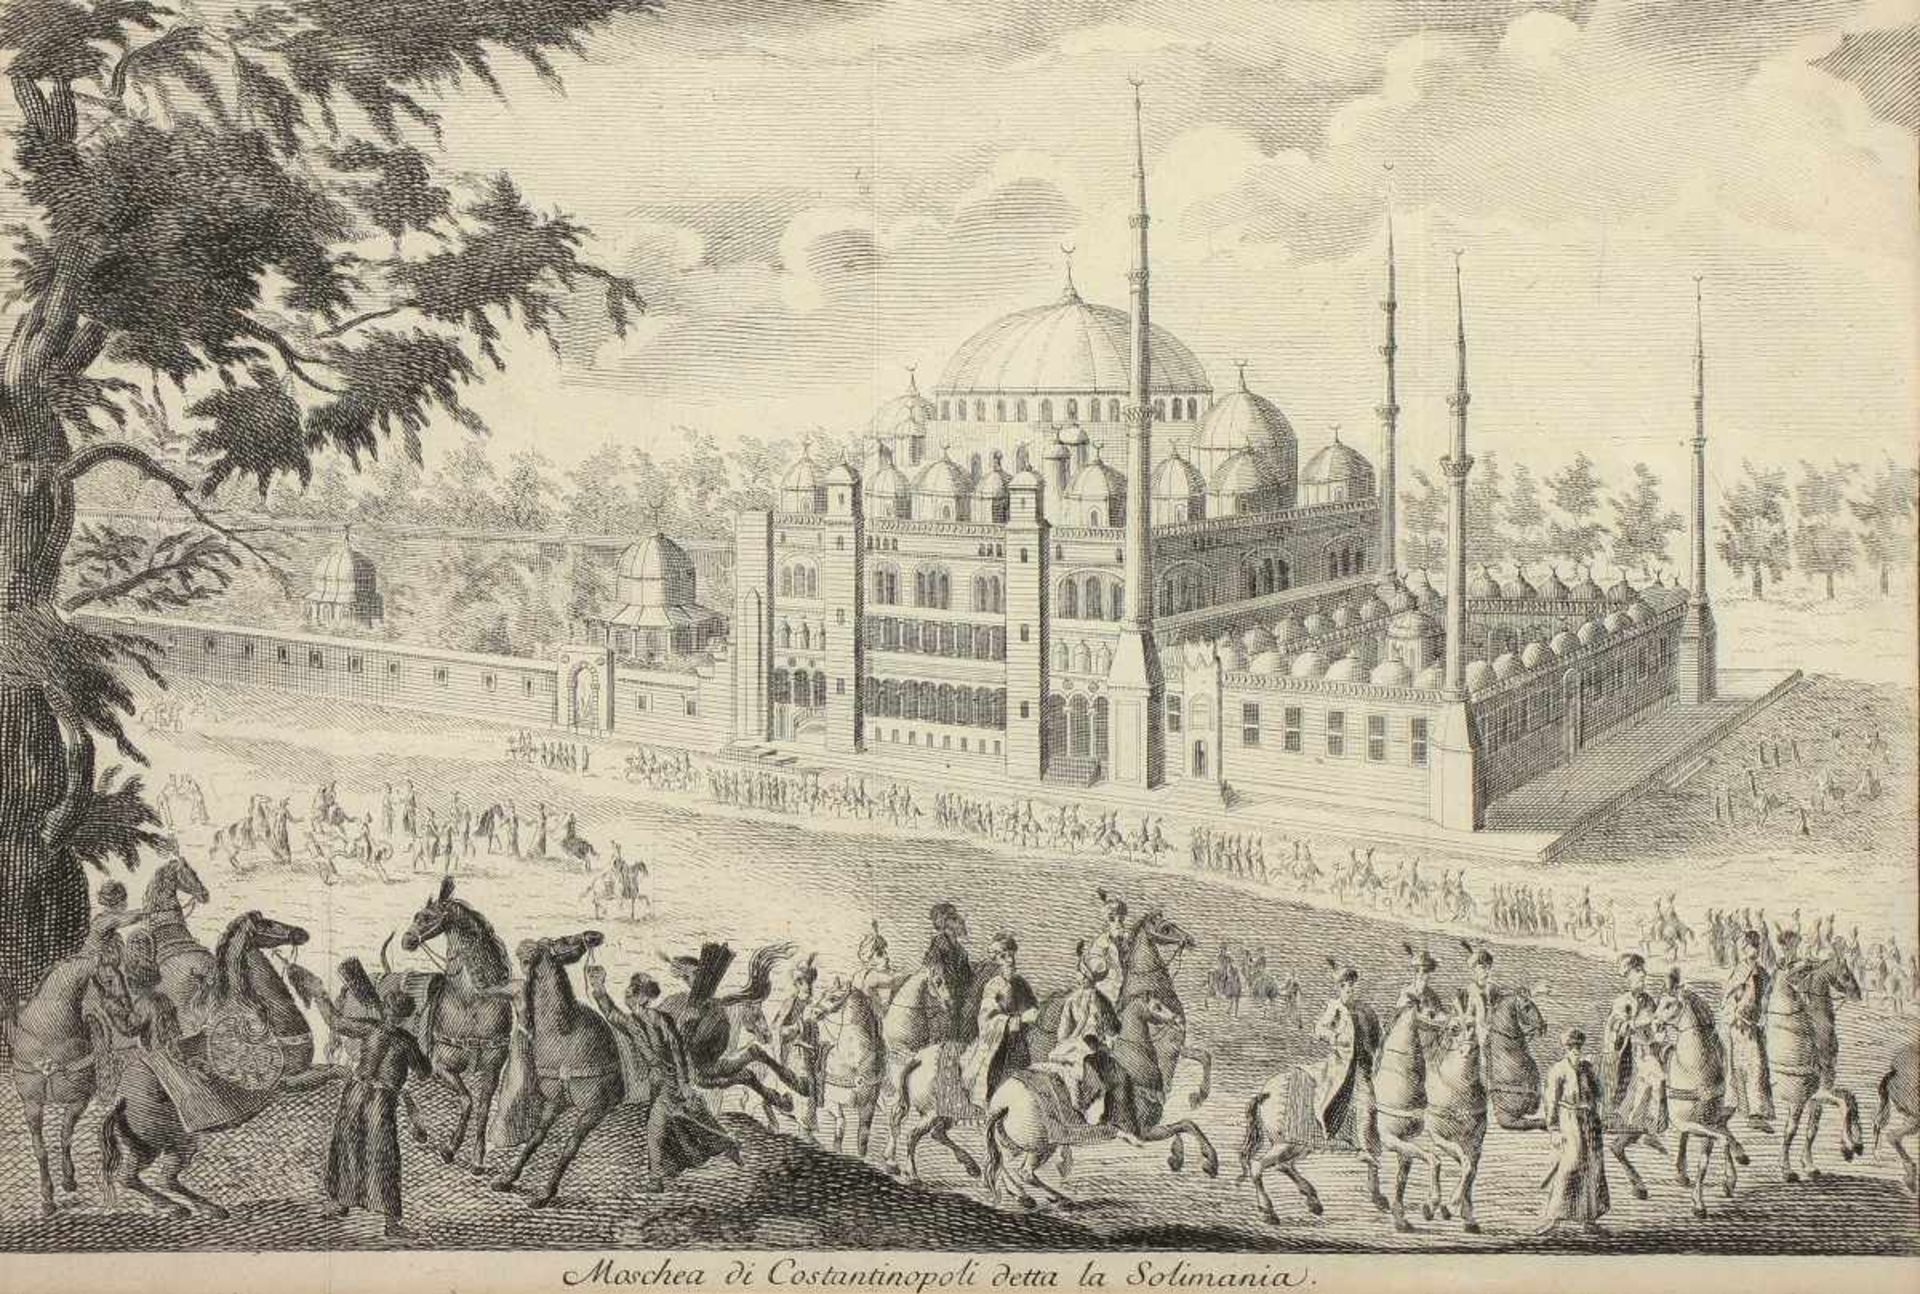 KONSTANTINOPEL, Teilansicht der Süleymaniye Moschee, "Moschea di Costantinopoli detta la Solimania", - Bild 2 aus 2